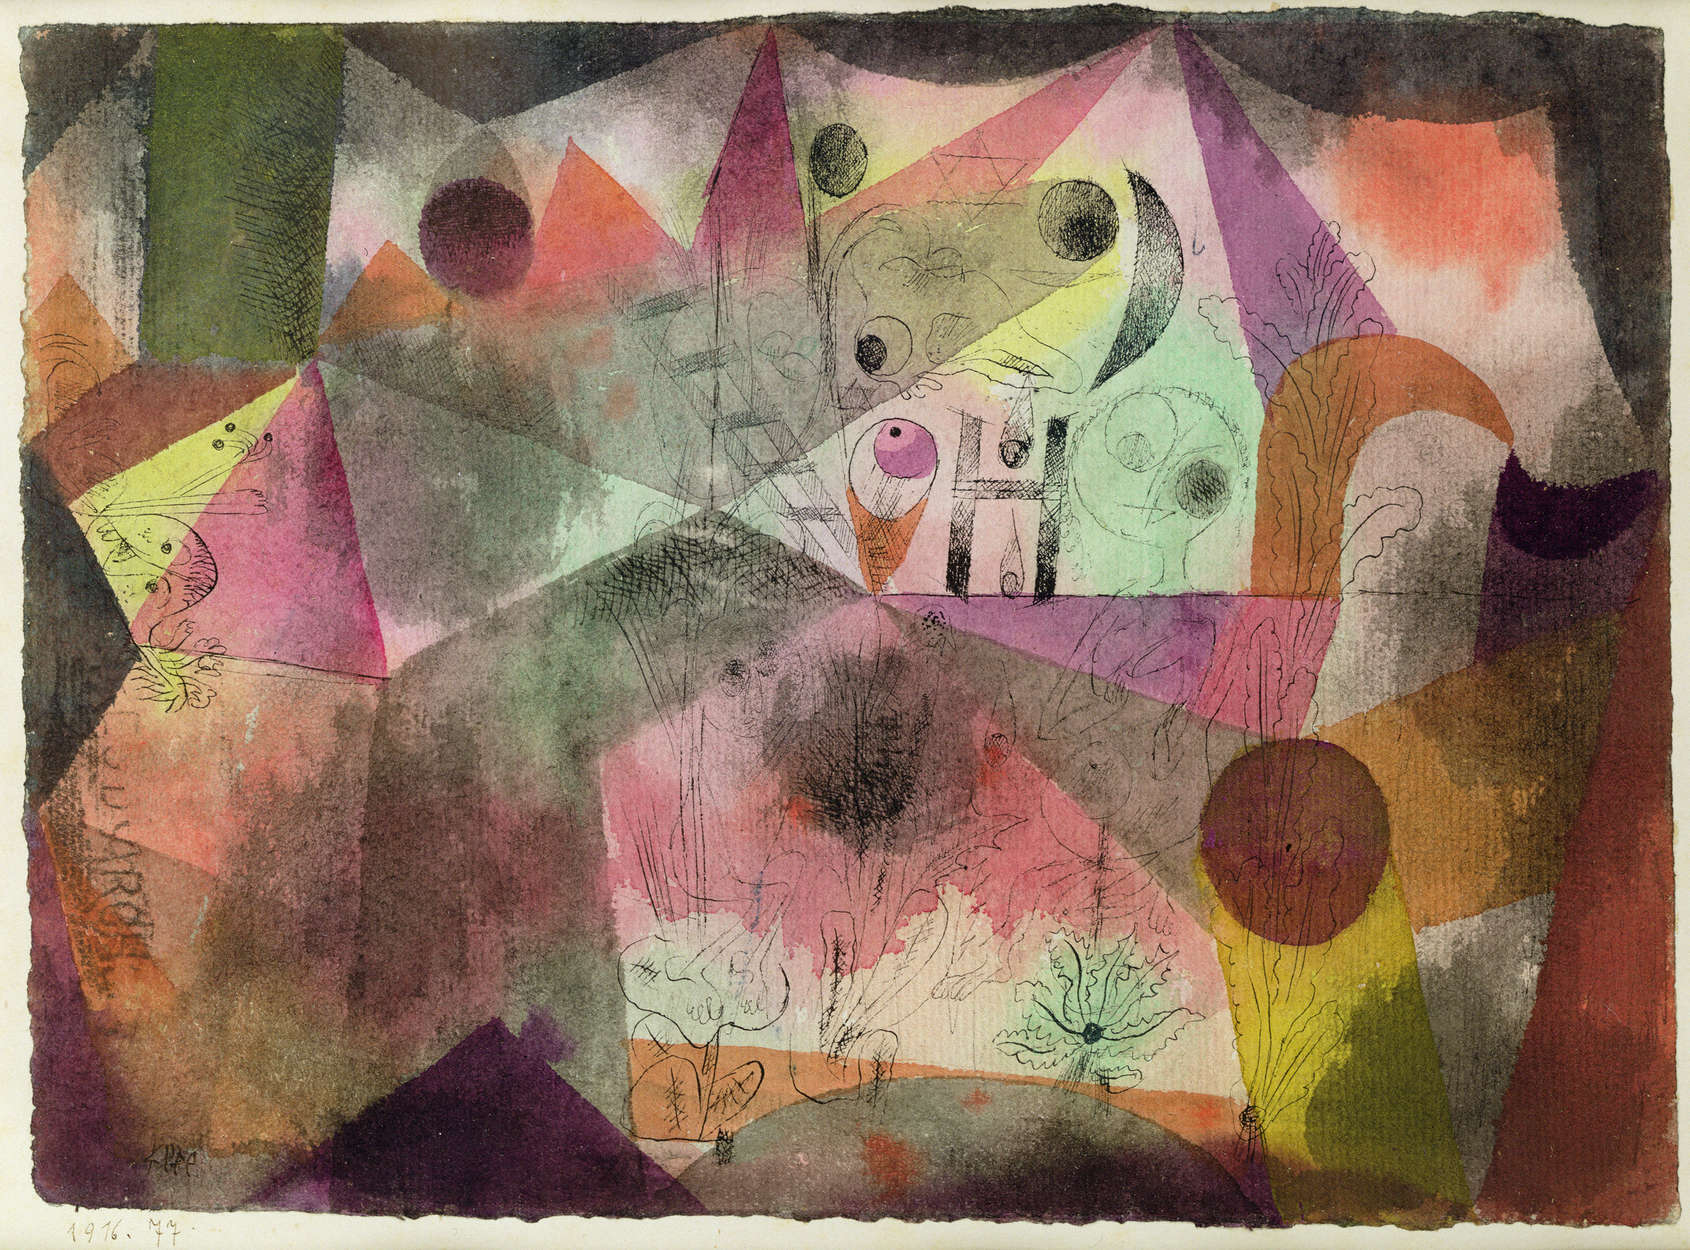             Papier peint panoramique "Avec le H" de Paul Klee
        